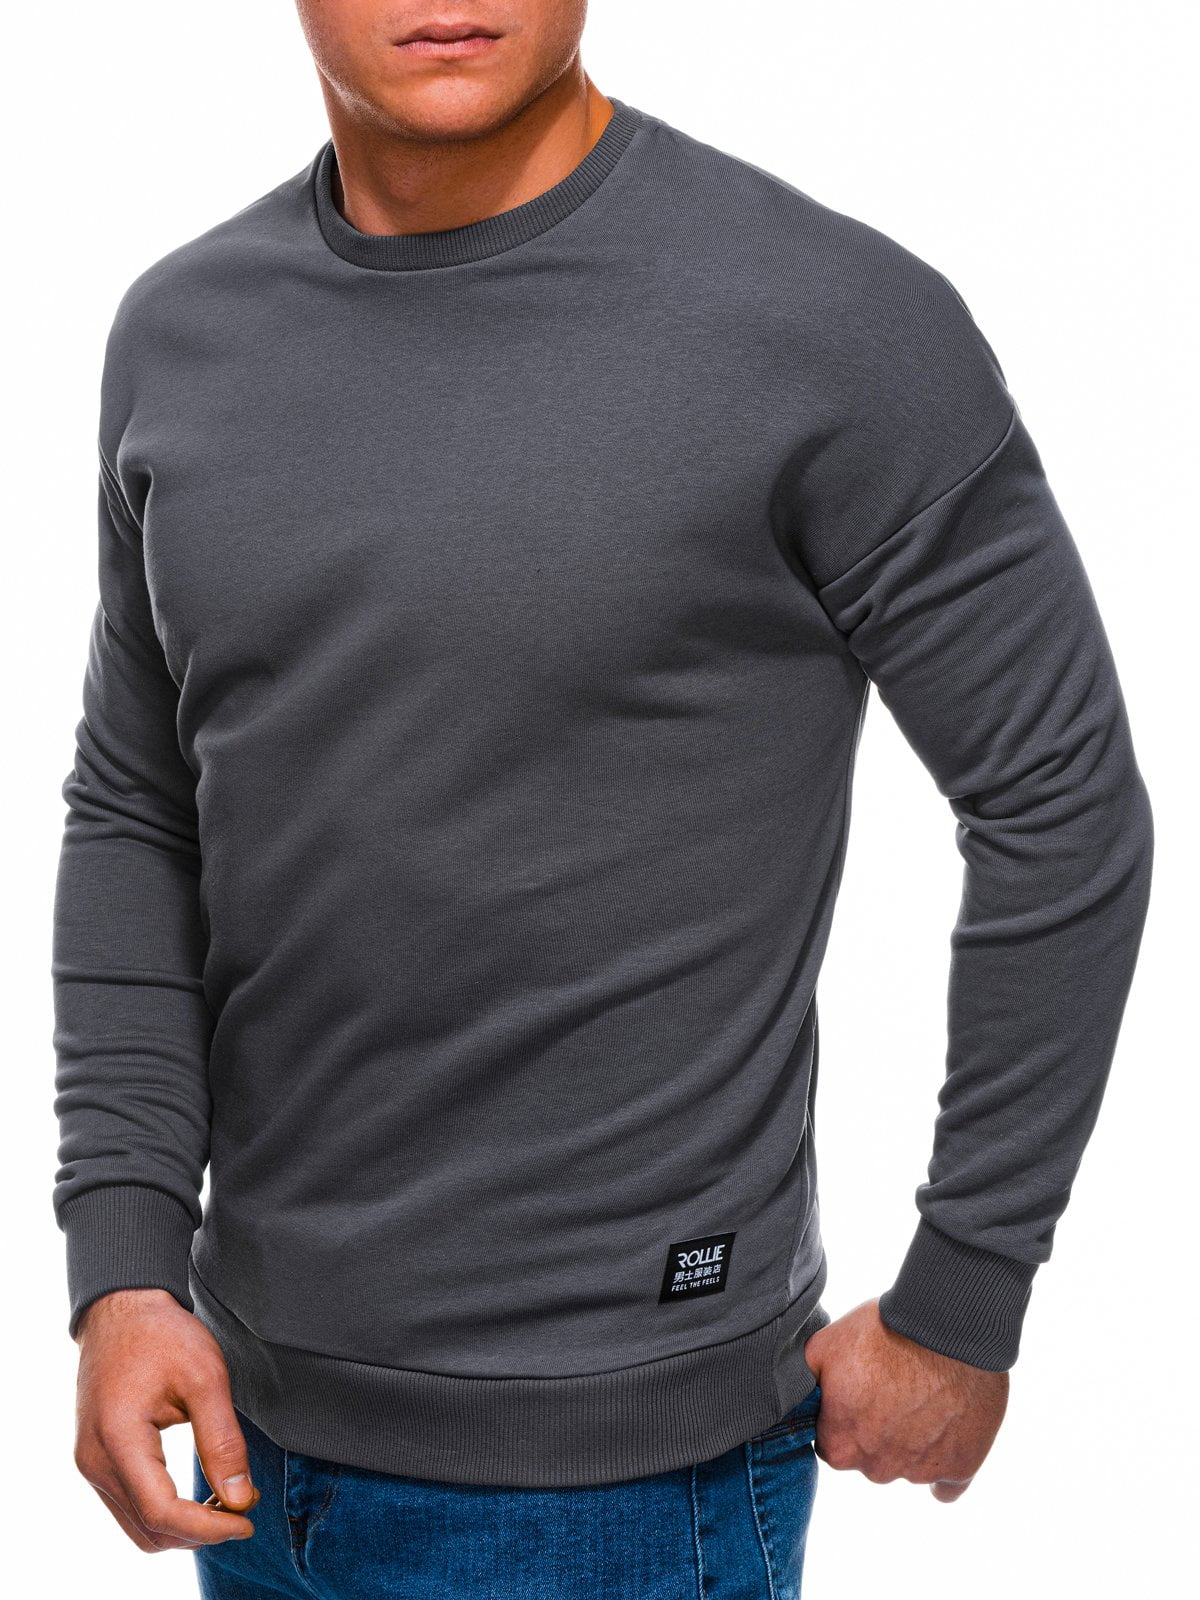 Afbeelding van Ombre Heren sweater grijs antraciet b1229